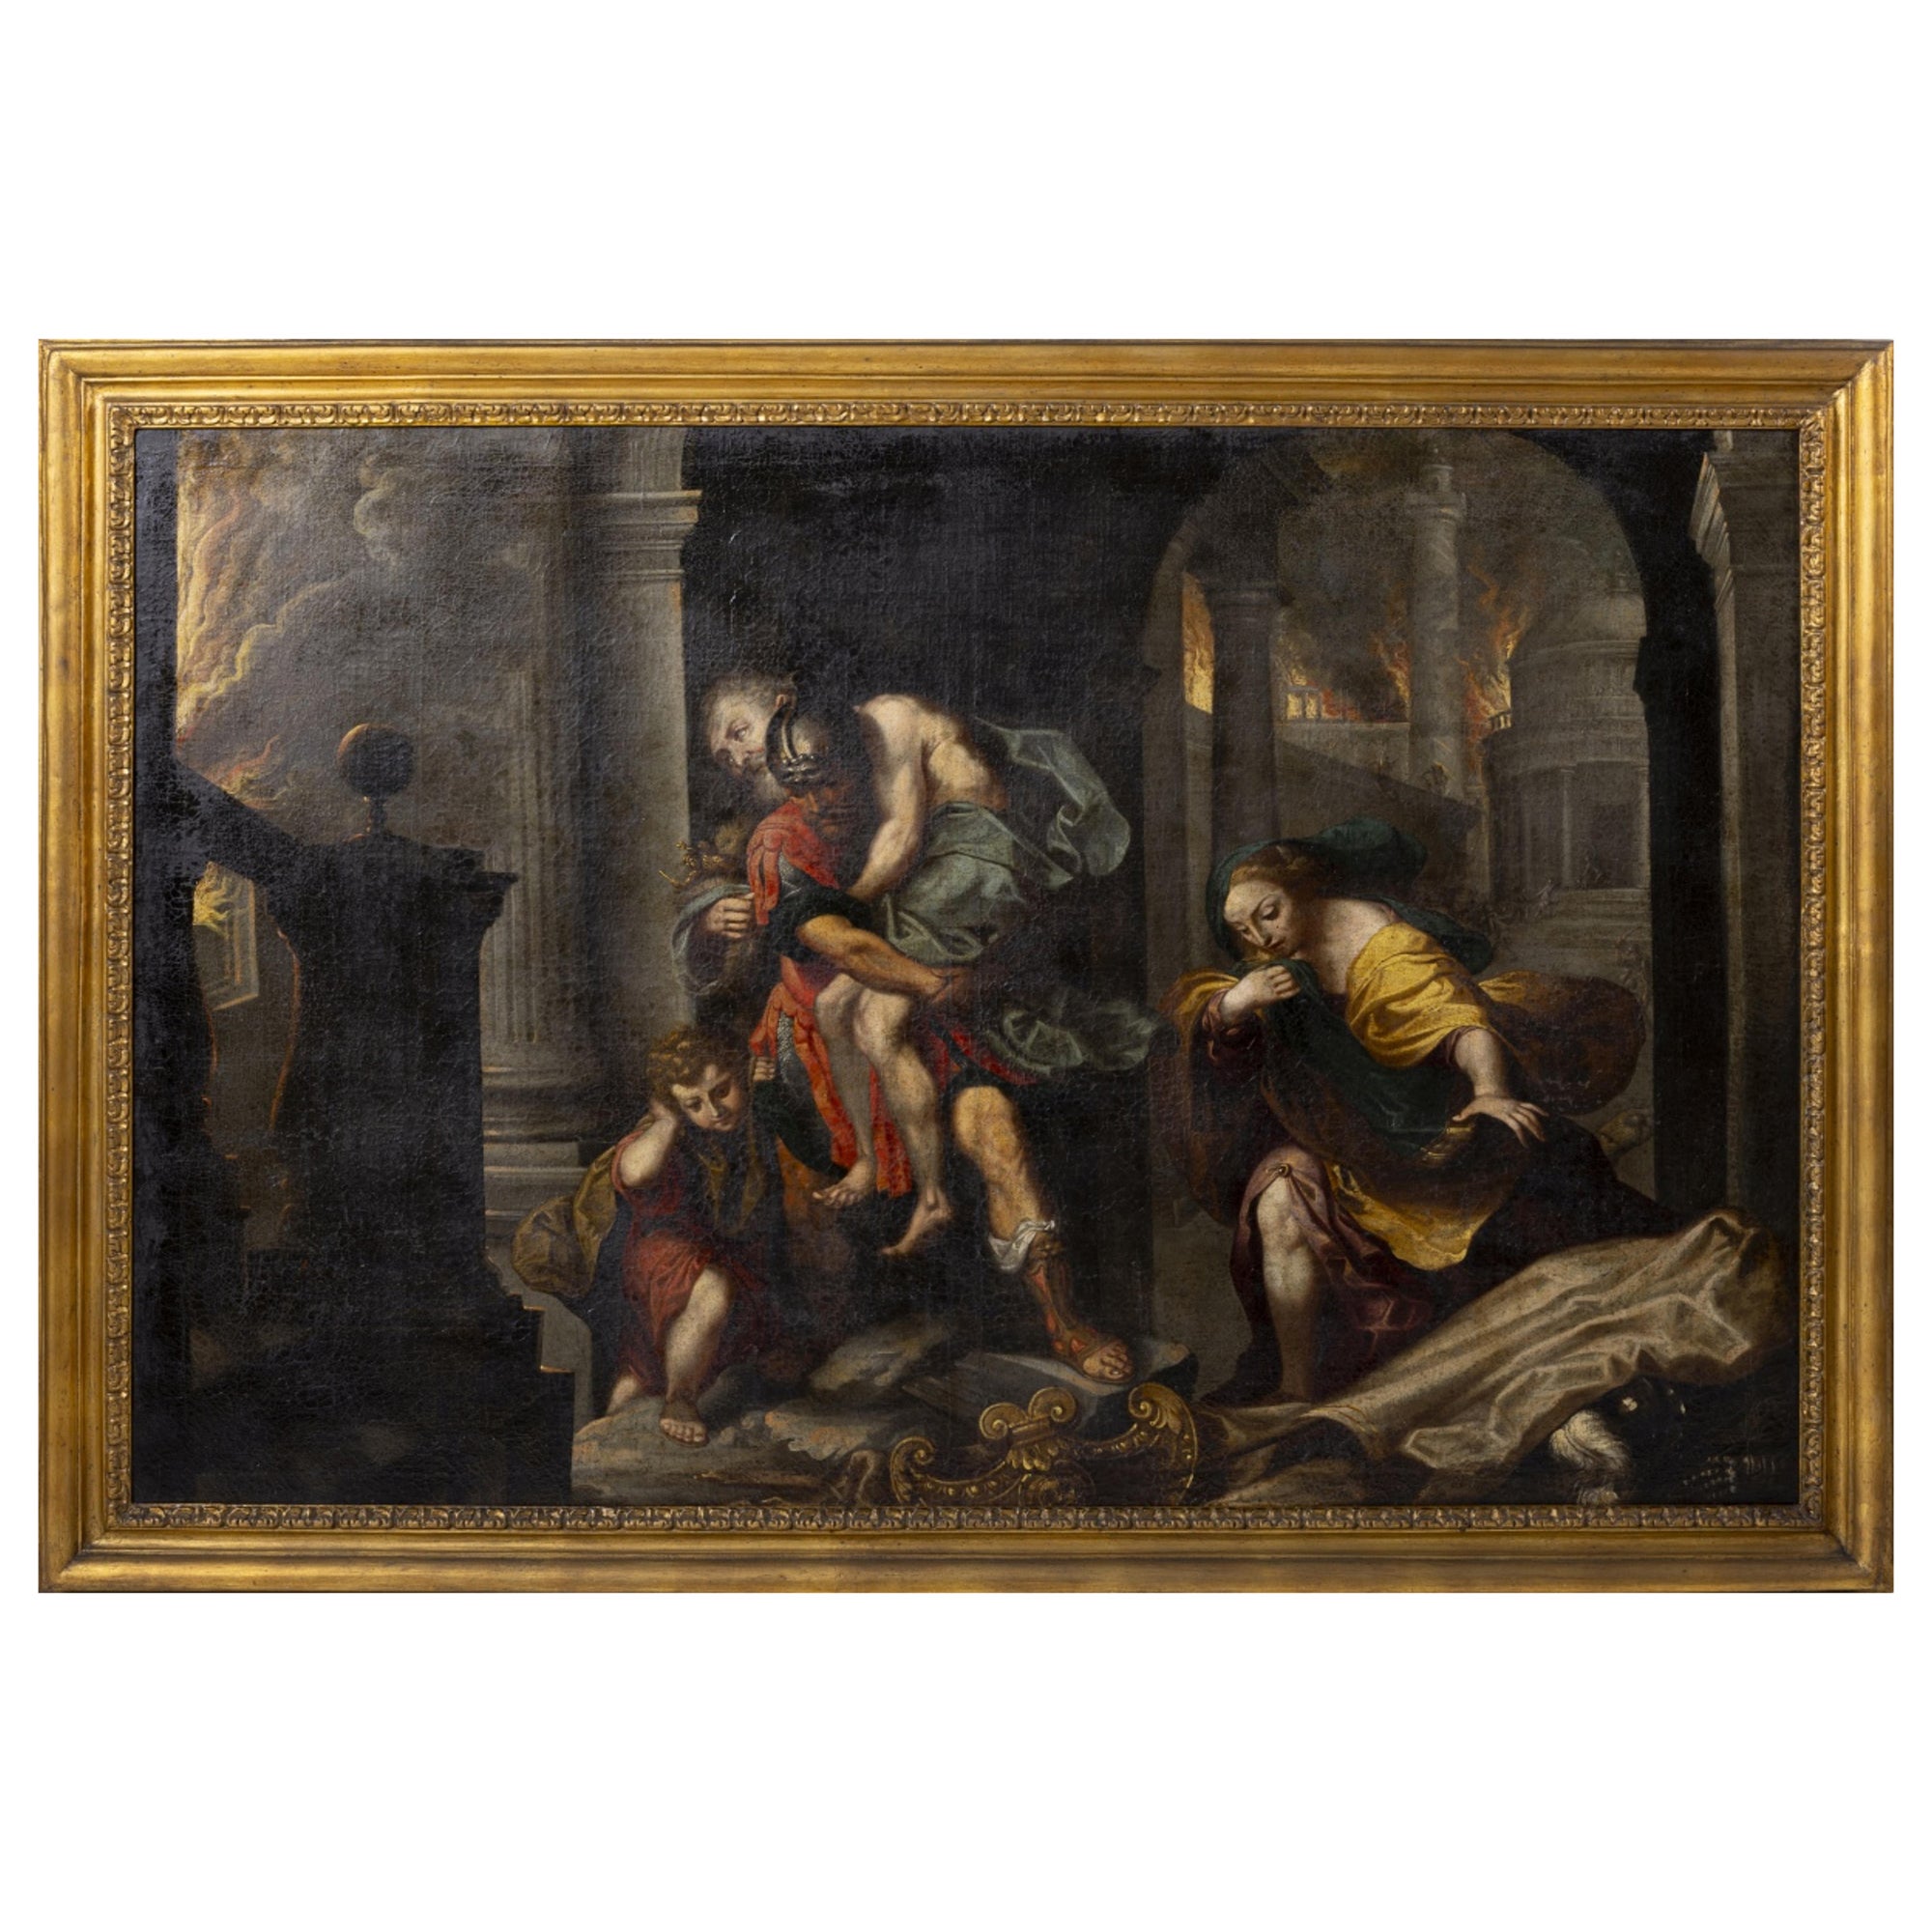 WILLEM VAN MIERIS (1662-1747) „Aeneas flücht aus dem brennenden Troy“ von Federico Barocci